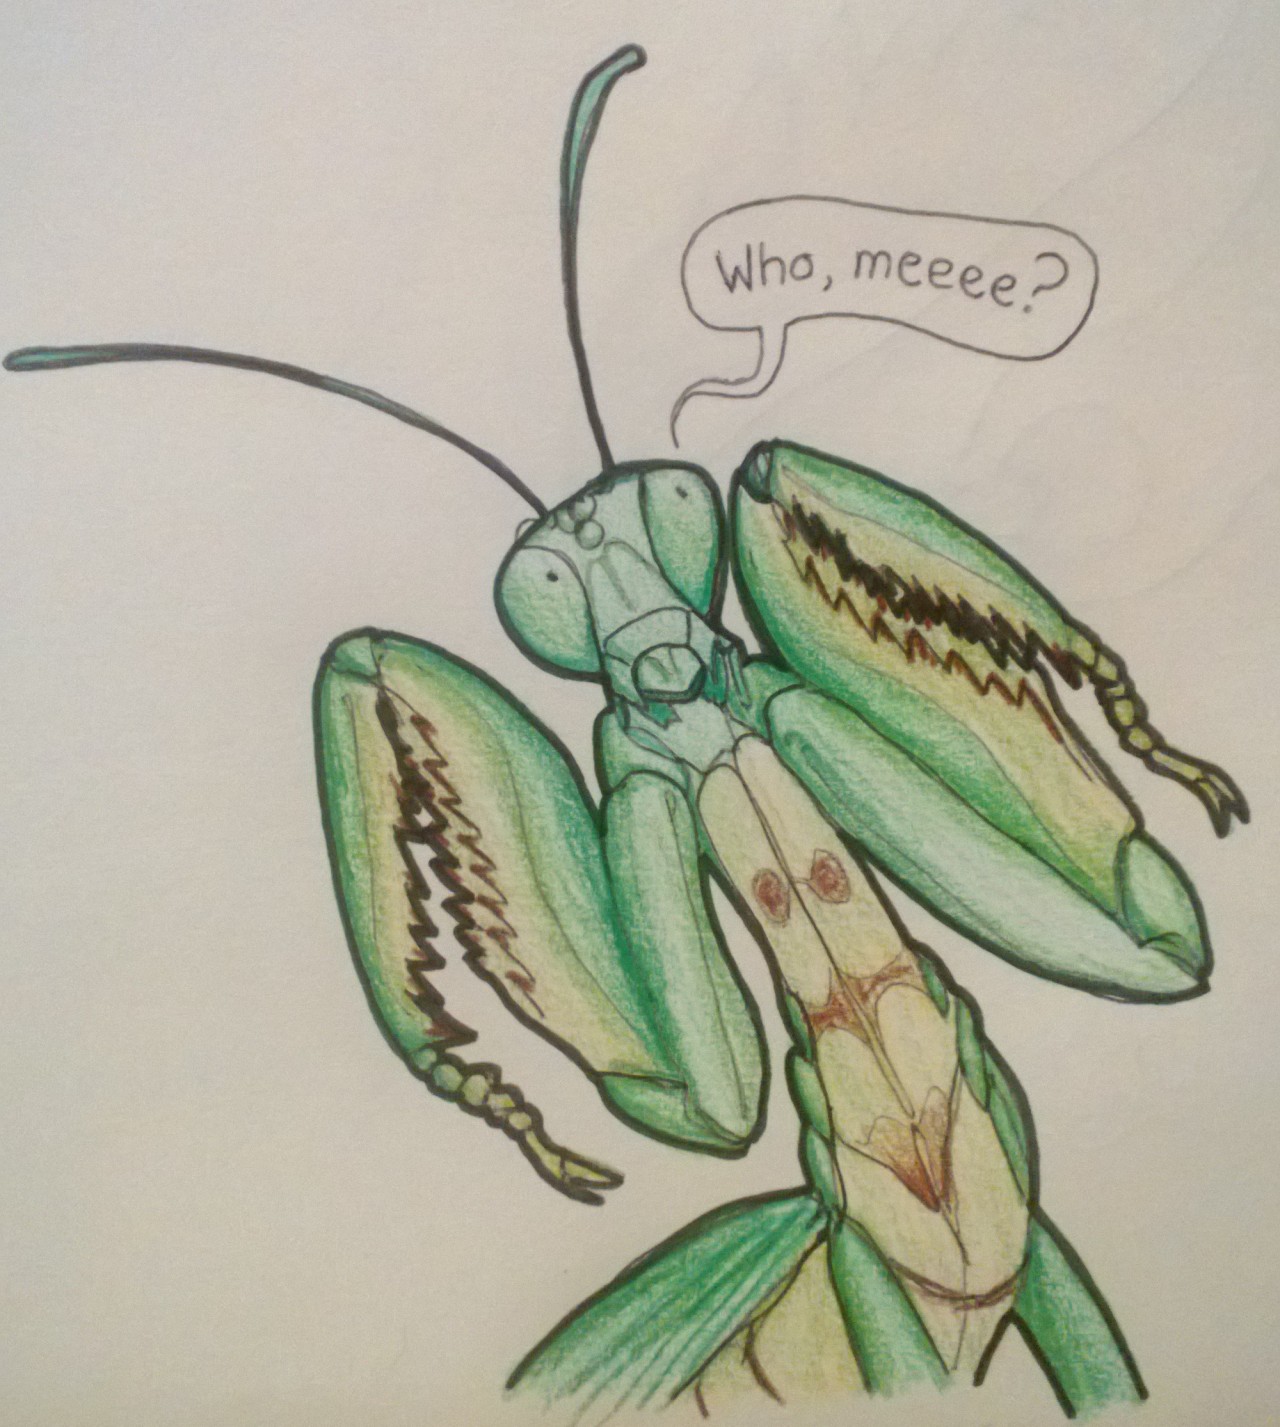 praying mantis face drawing